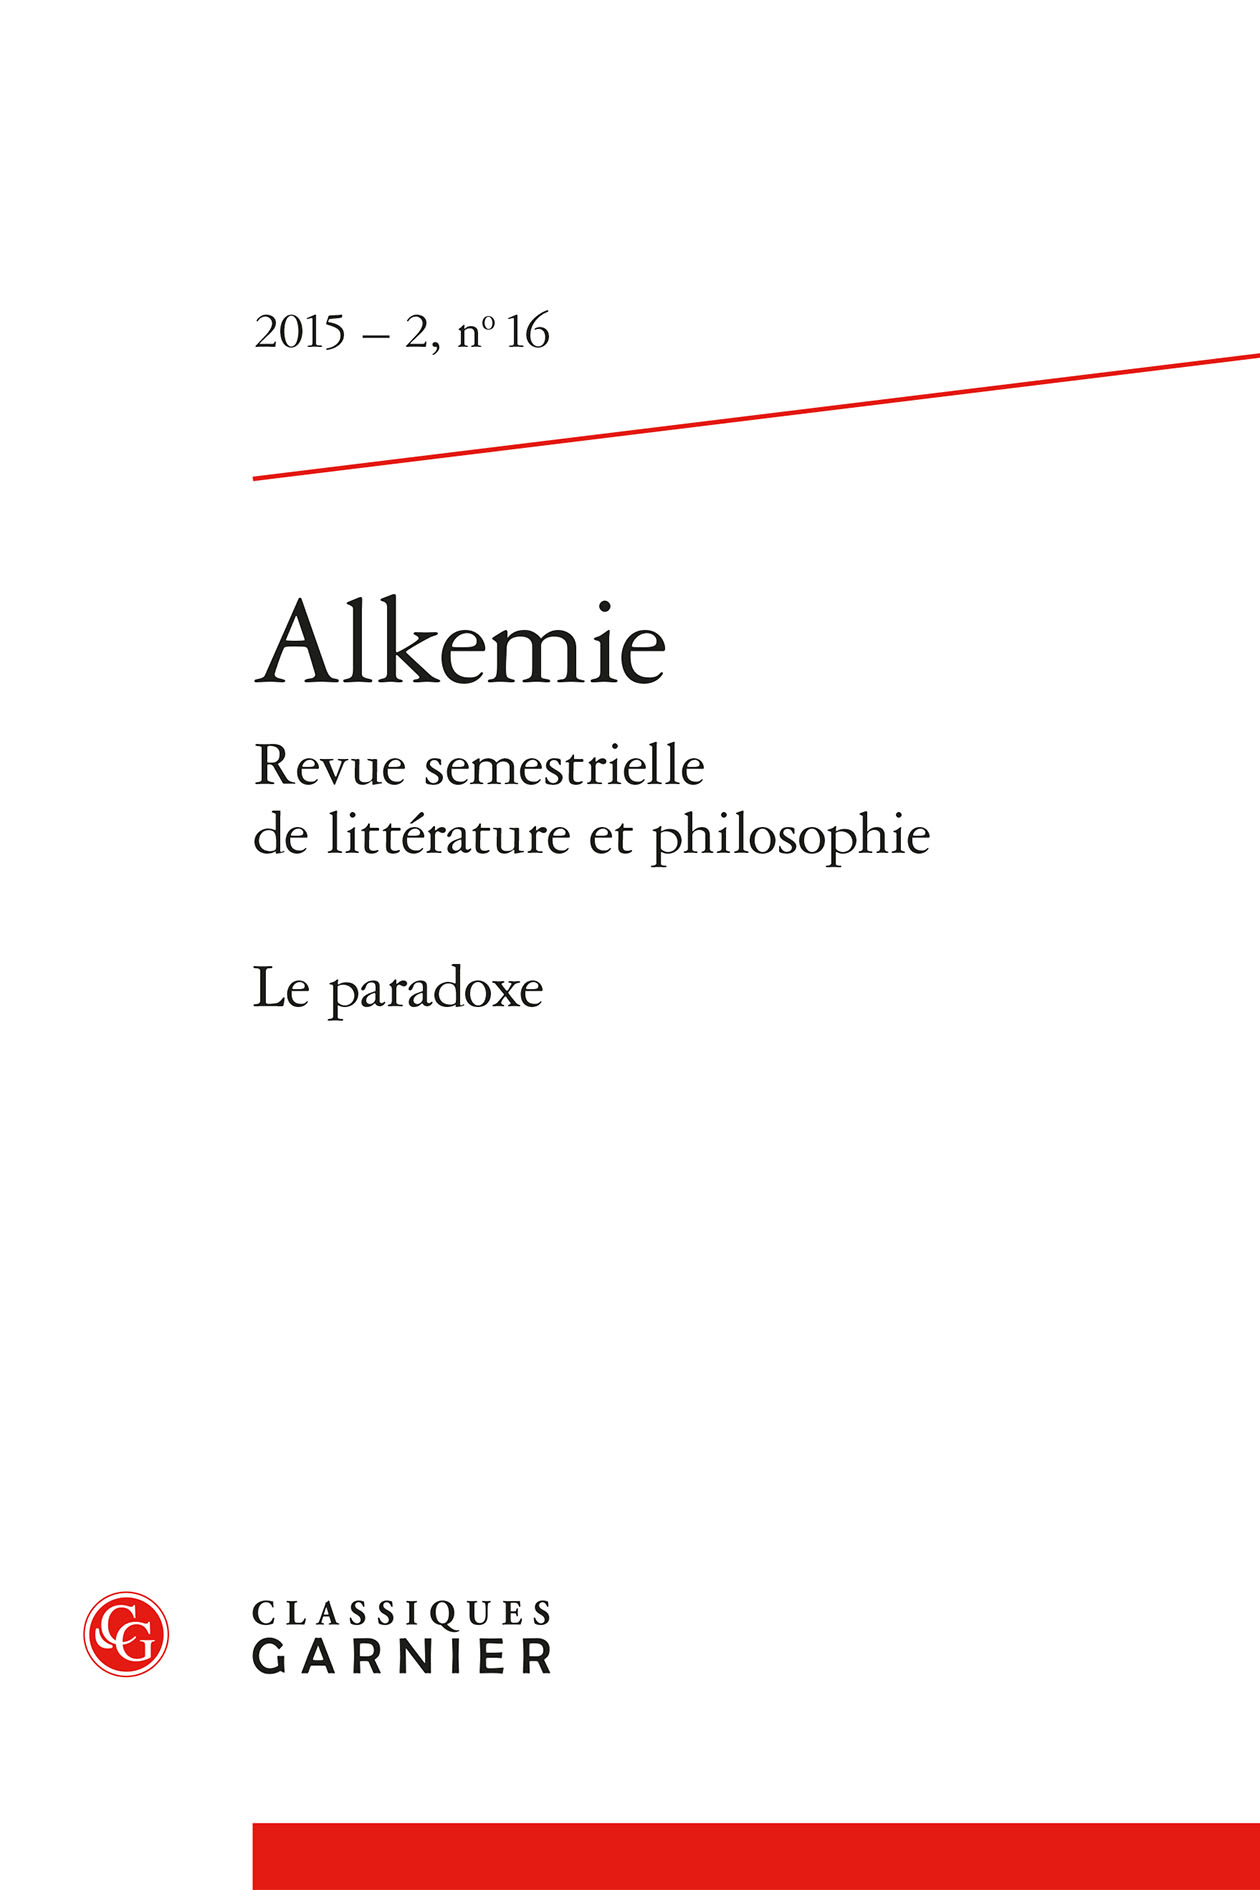 Vincent Teixeira, Shakespeare and the Boys Band – Culture jetable et marchandise hédoniste, Paris, Kimé, 2014. Cover Image